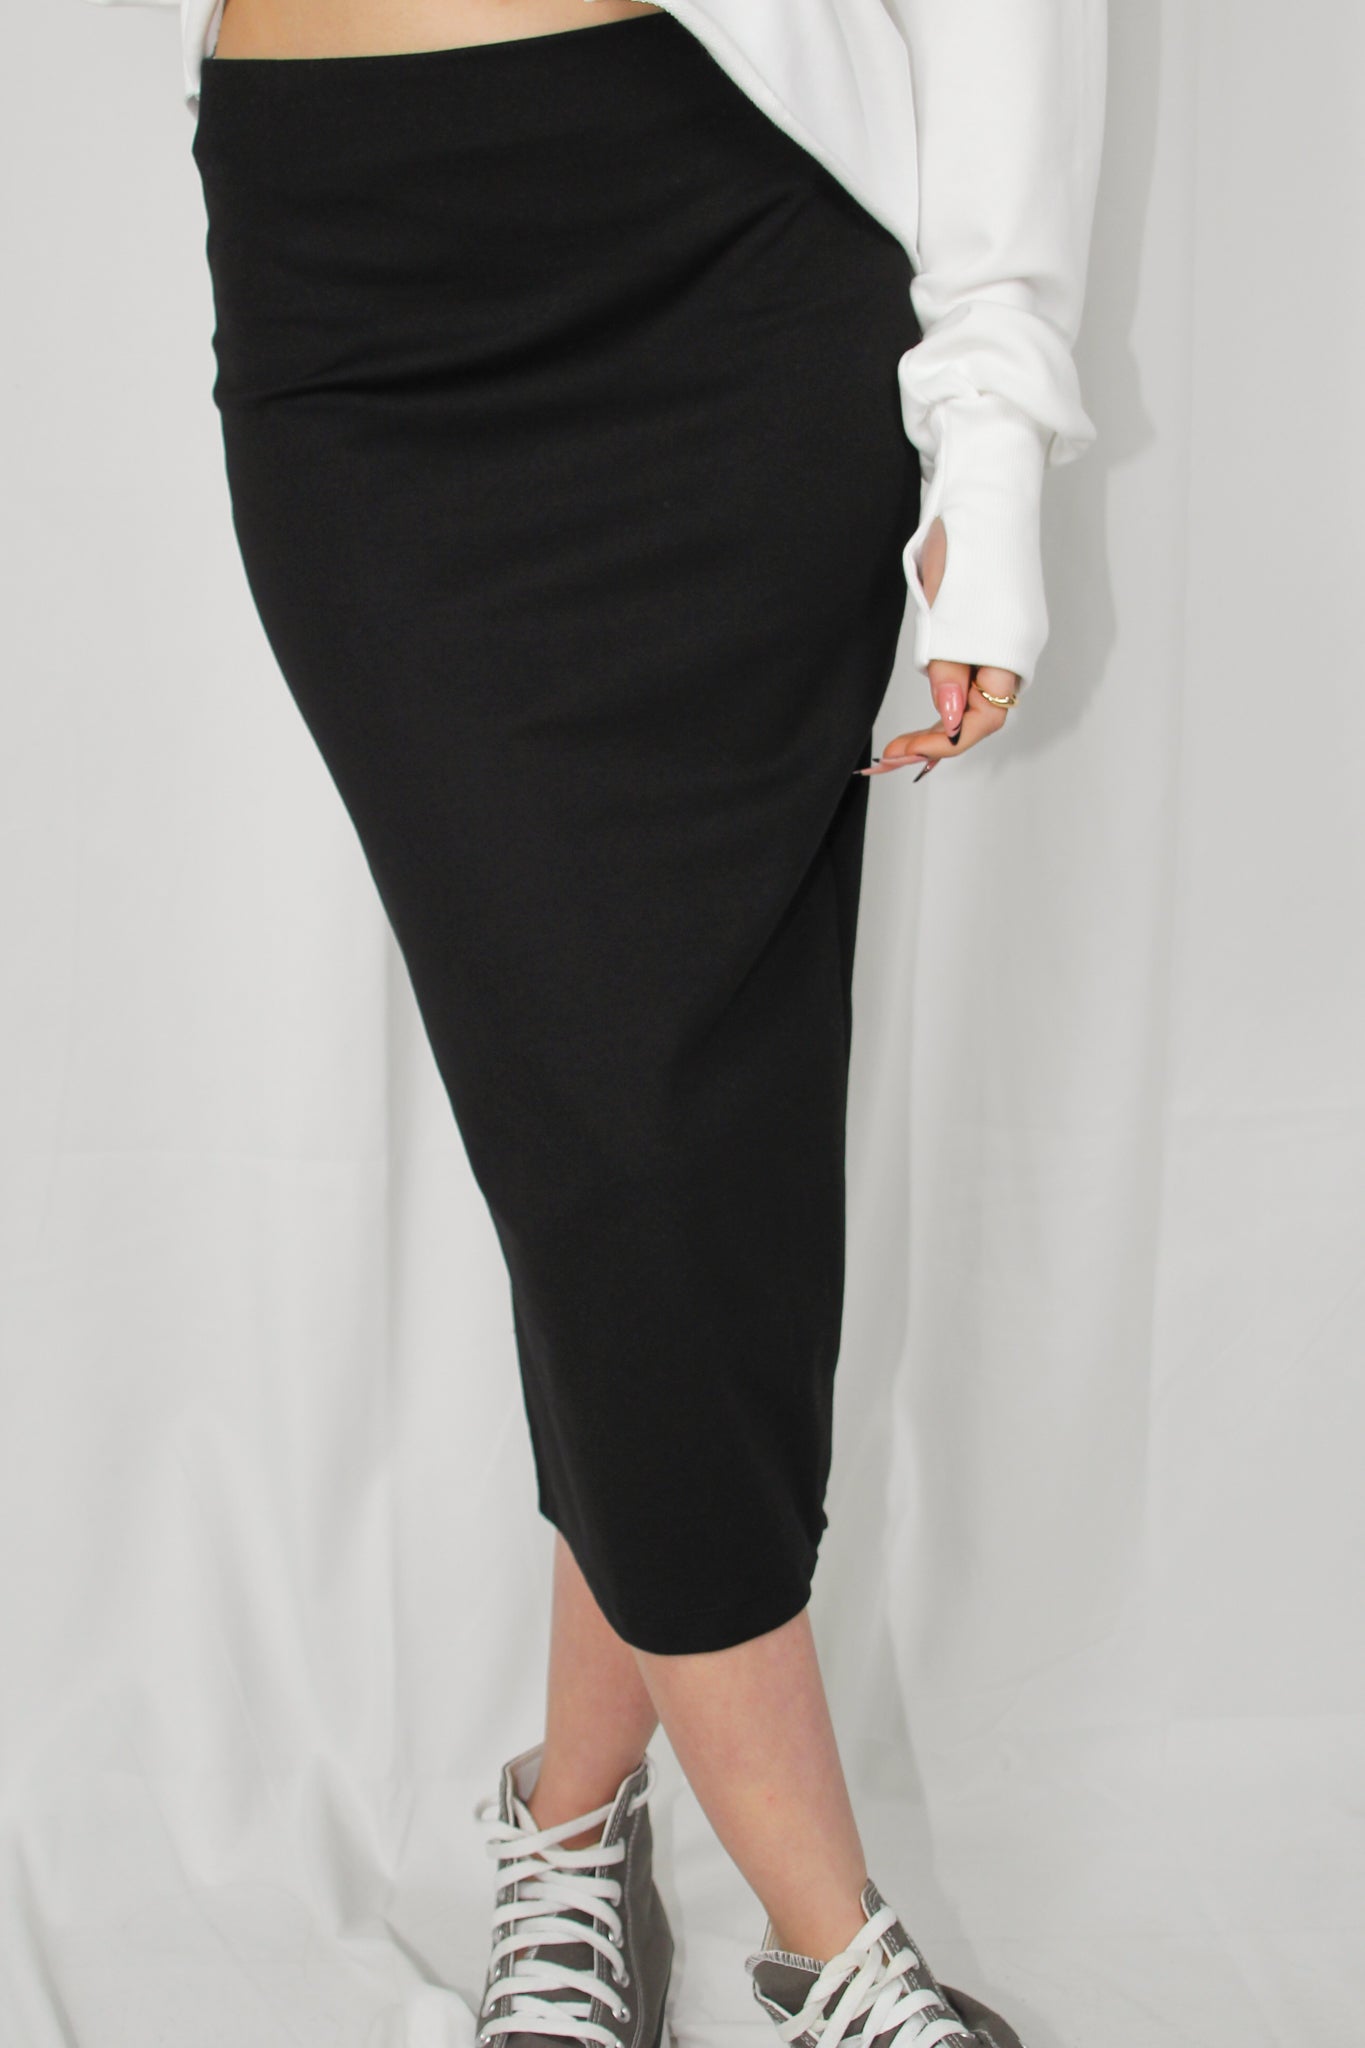 חצאית מידי ג'רסי בצבע שחור לנשים-Daniel-1-נאקו